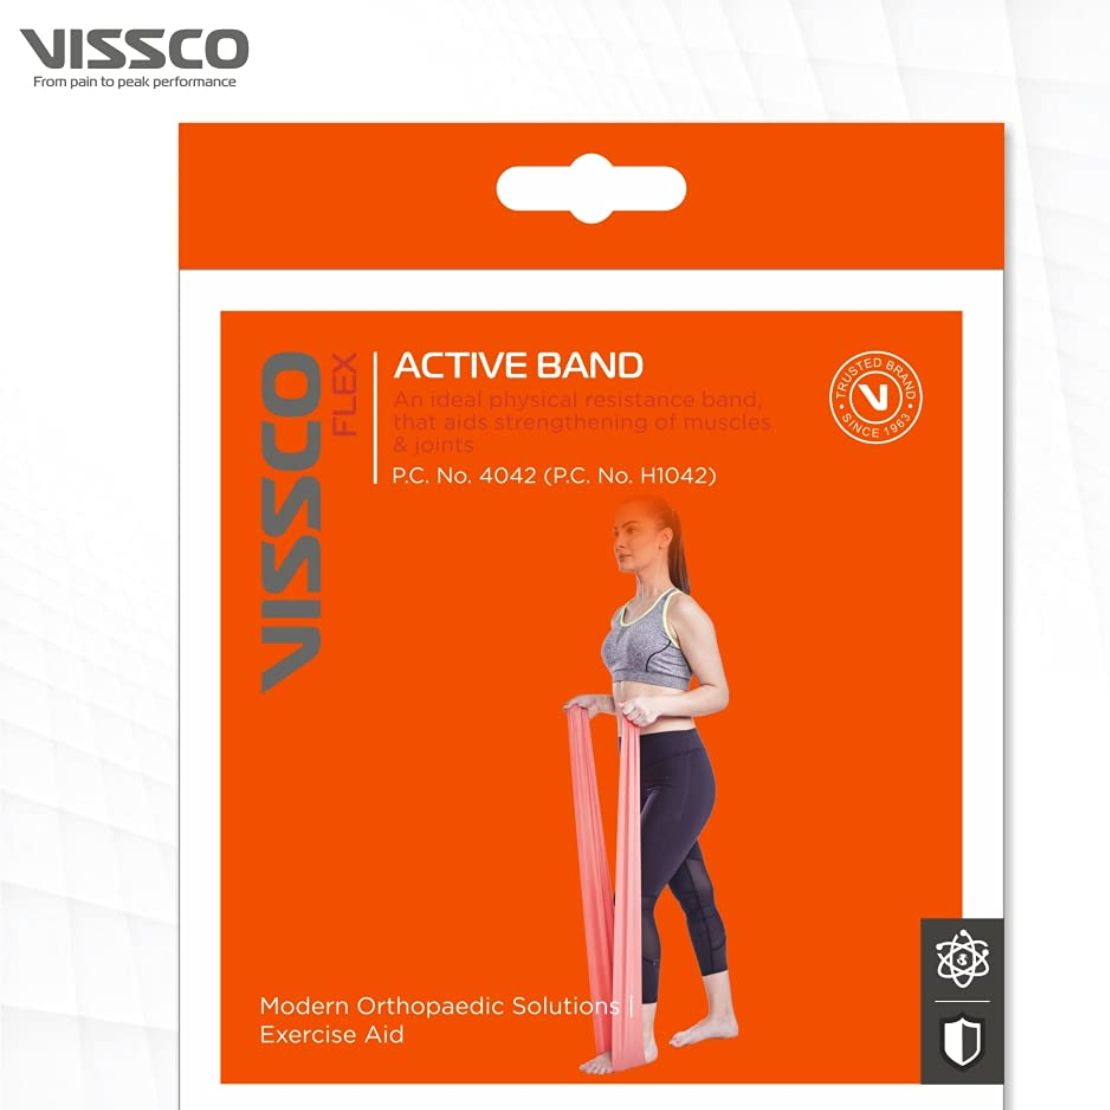 Vissco Active Band